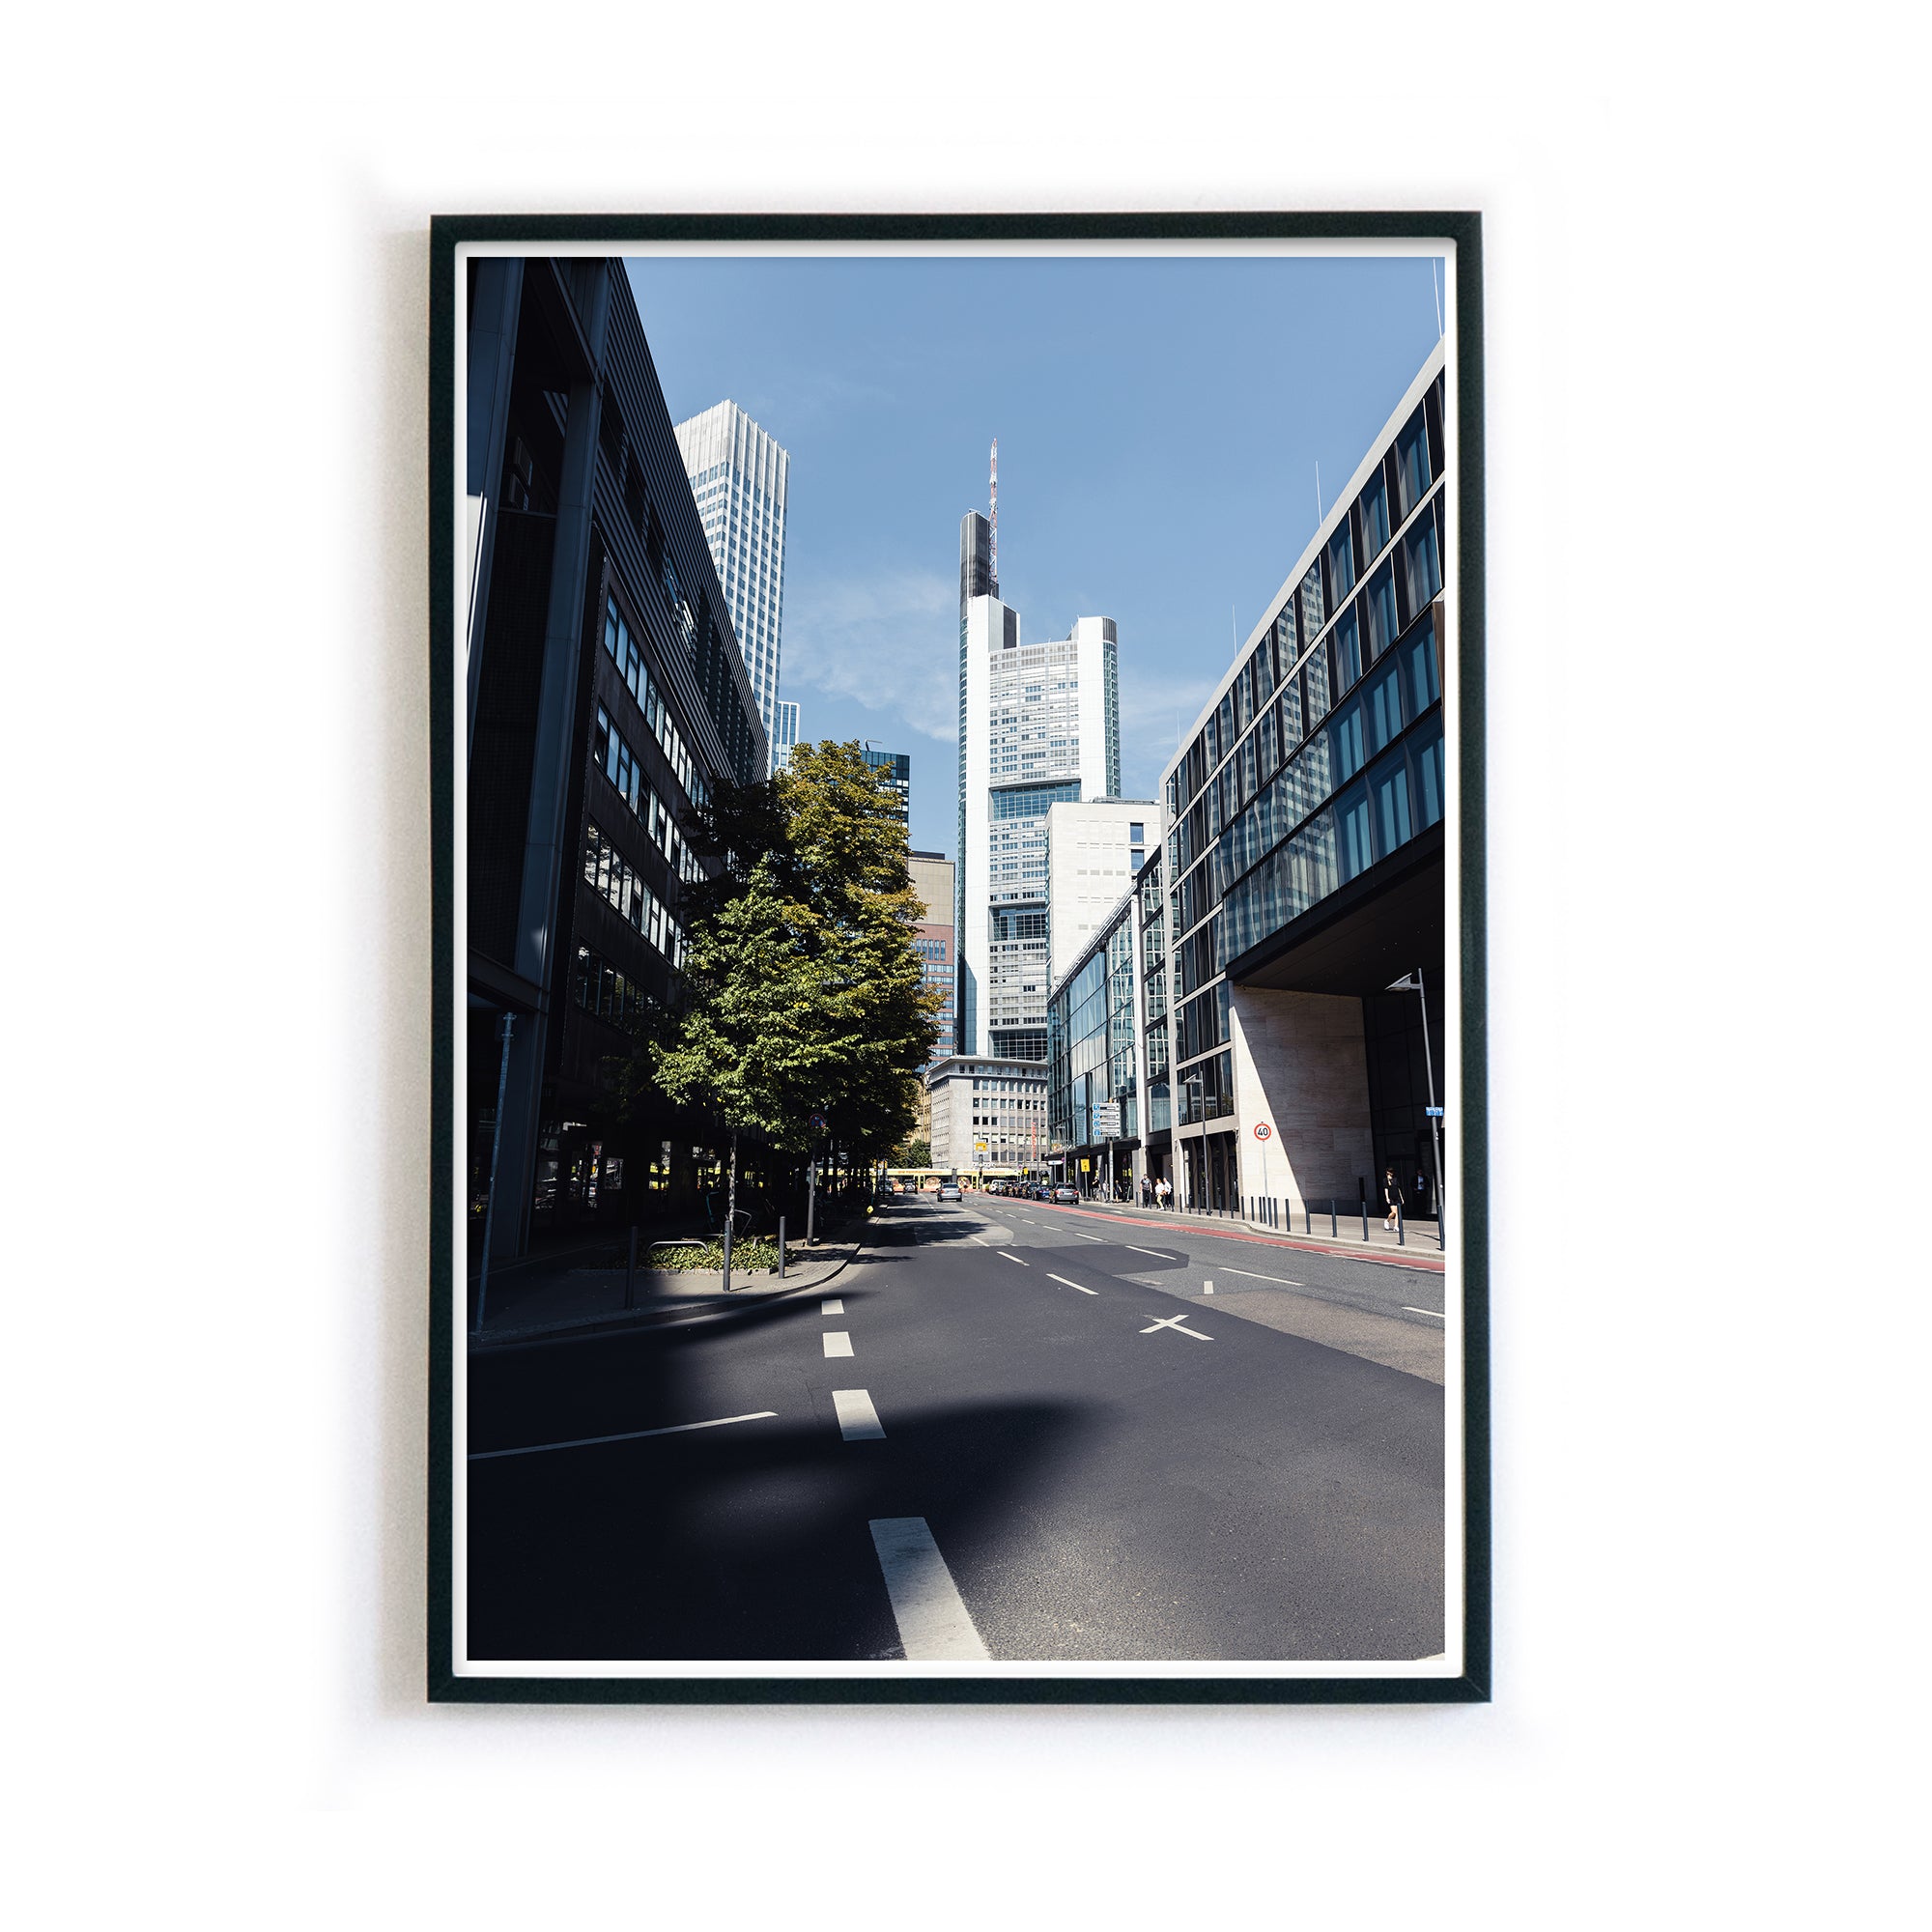 4one-pictures-frankfurt-am-main-poster-skyline-bild-ffm-kunstdruck-shop-bilderrahmen-5mm.jpg